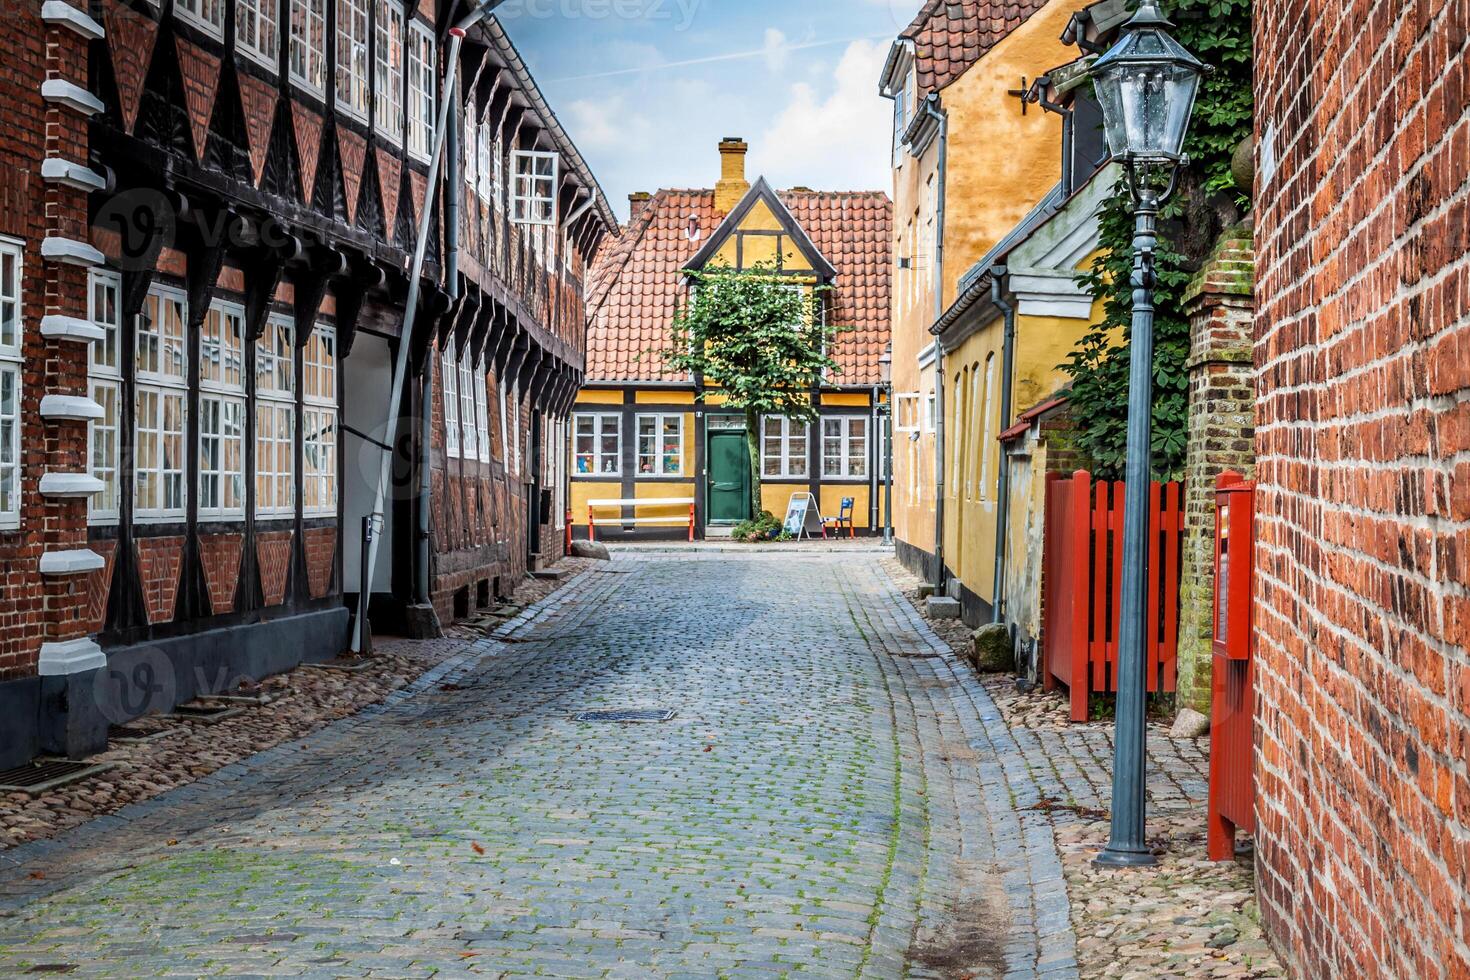 gata med gammal hus från kunglig stad ribe i Danmark foto